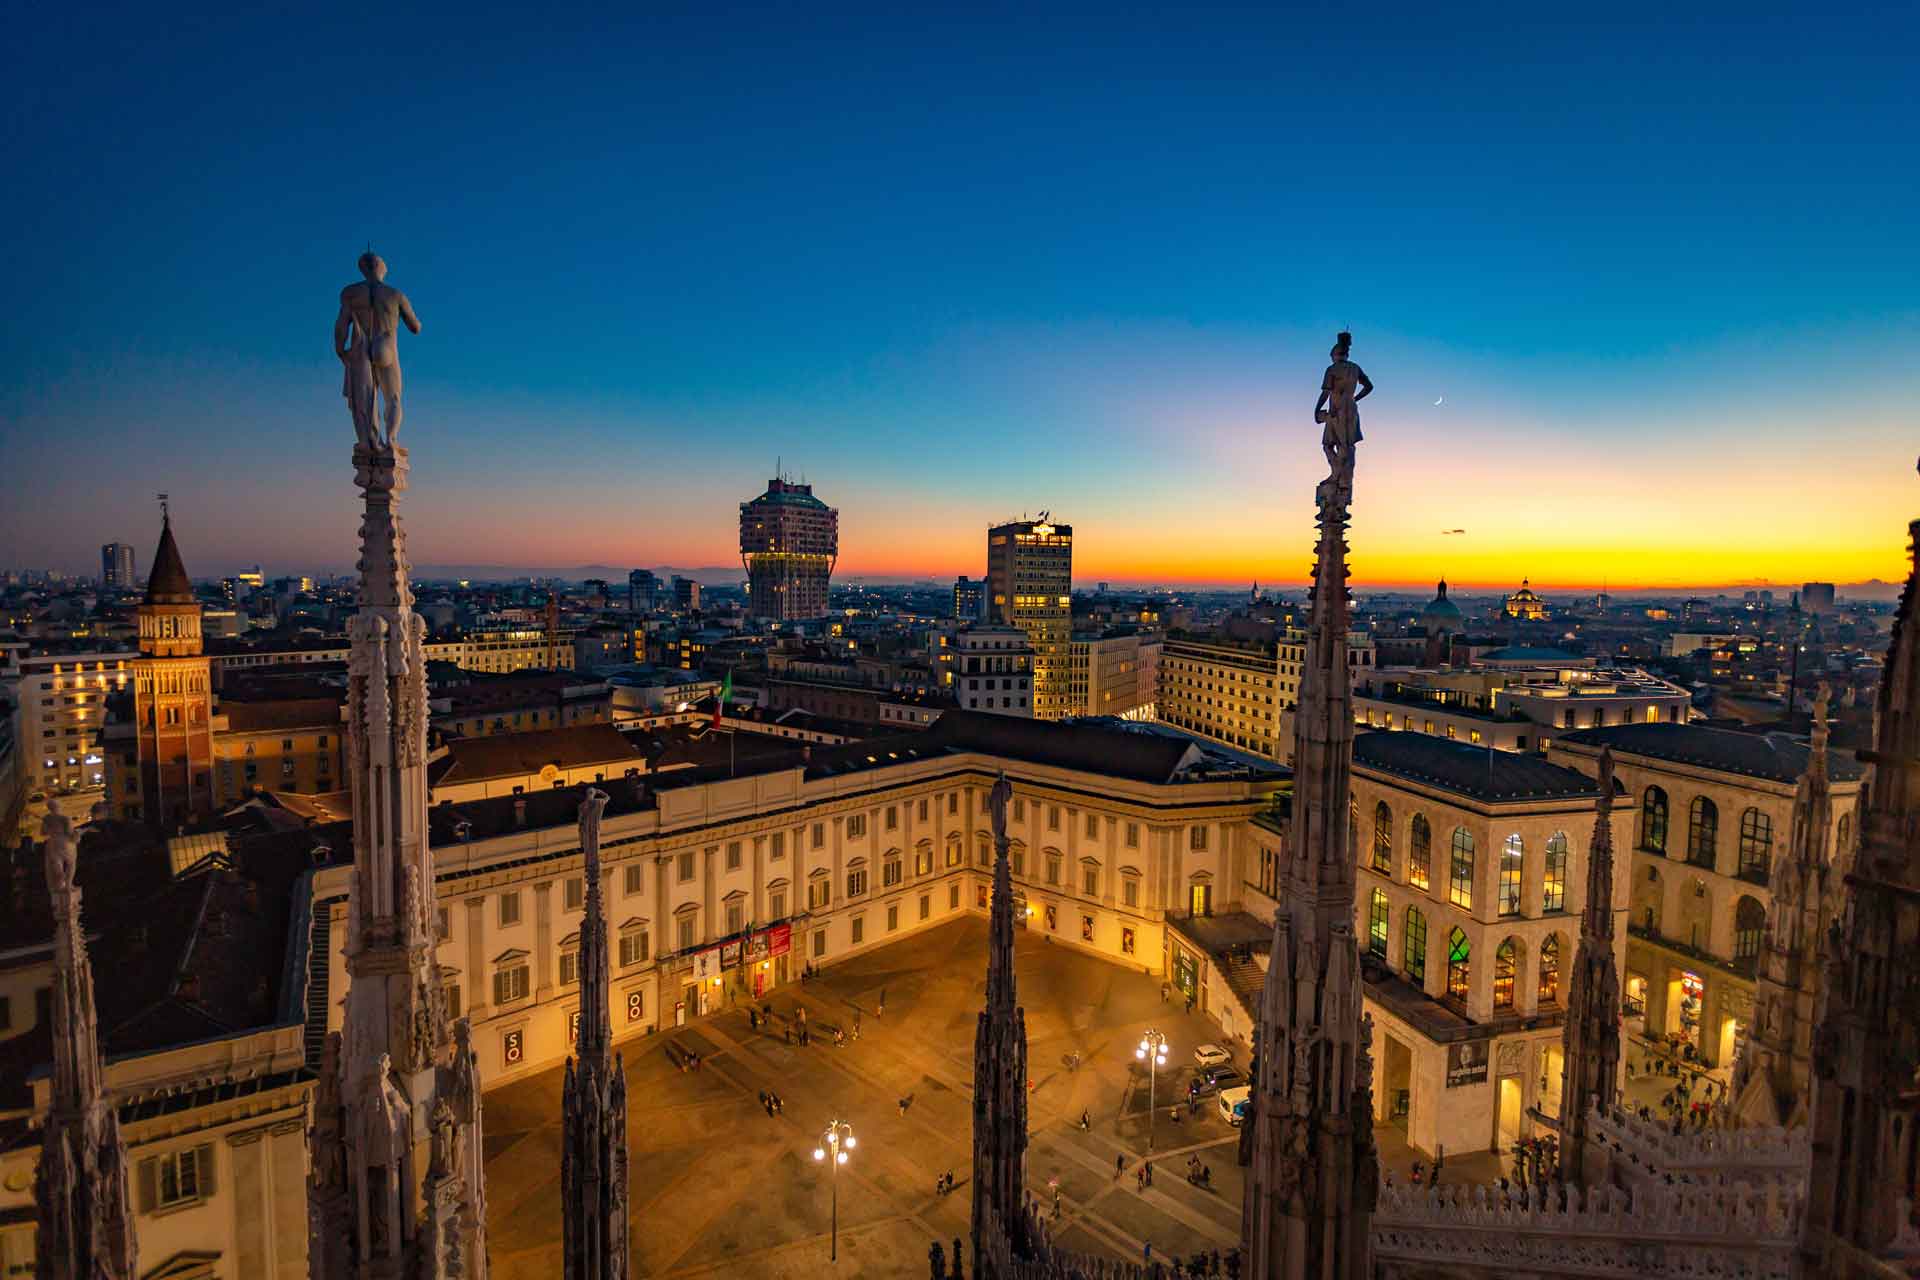 Milan panorama from Duomo at sunset